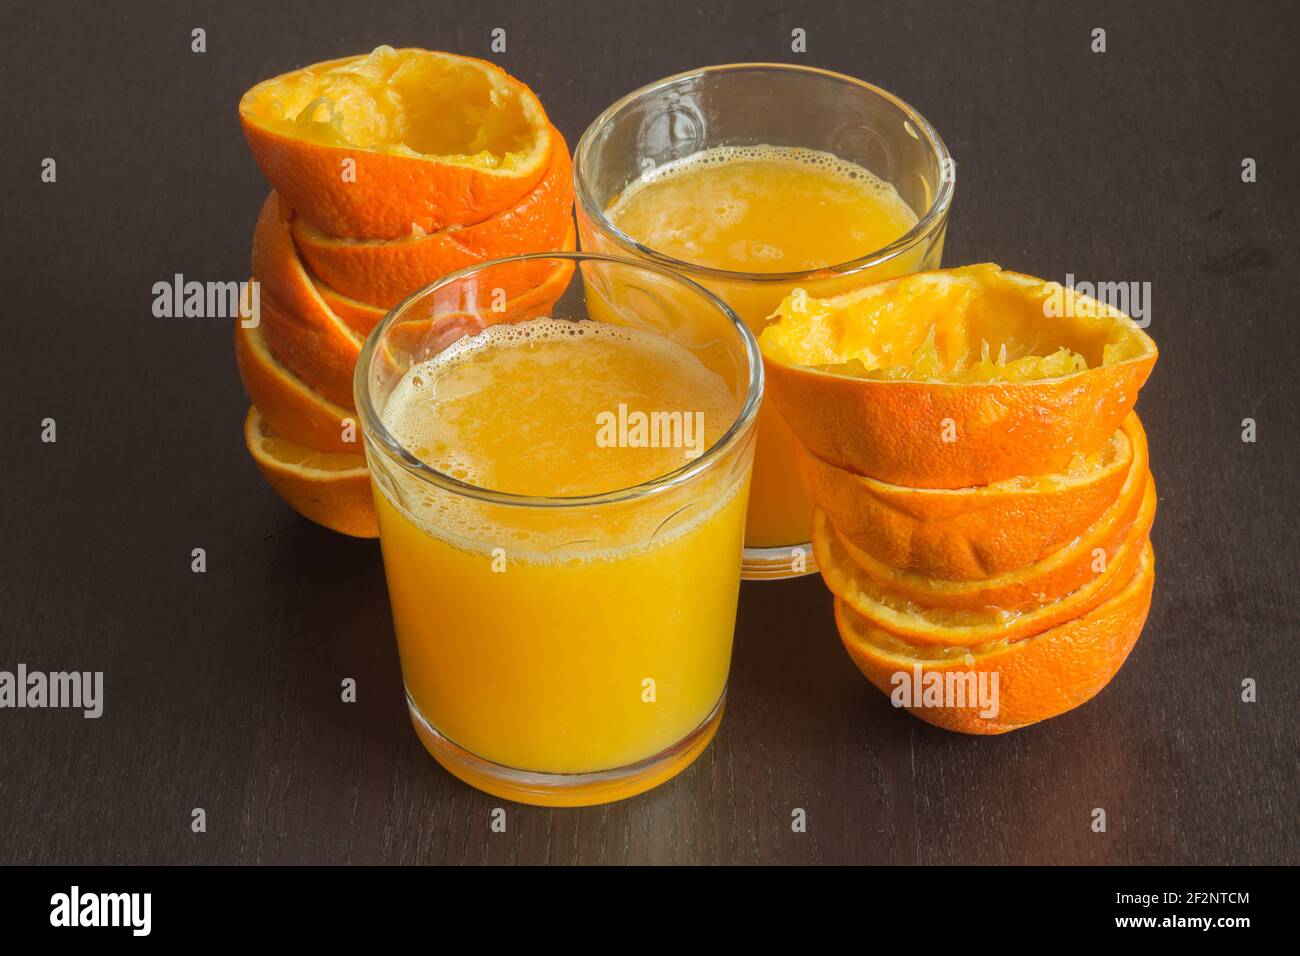 Due bicchieri di succo d'arancia appena spremuto con le bucce di frutta accanto su un elegante tavolo di legno scuro. Cibo sano con agrumi. Foto Stock